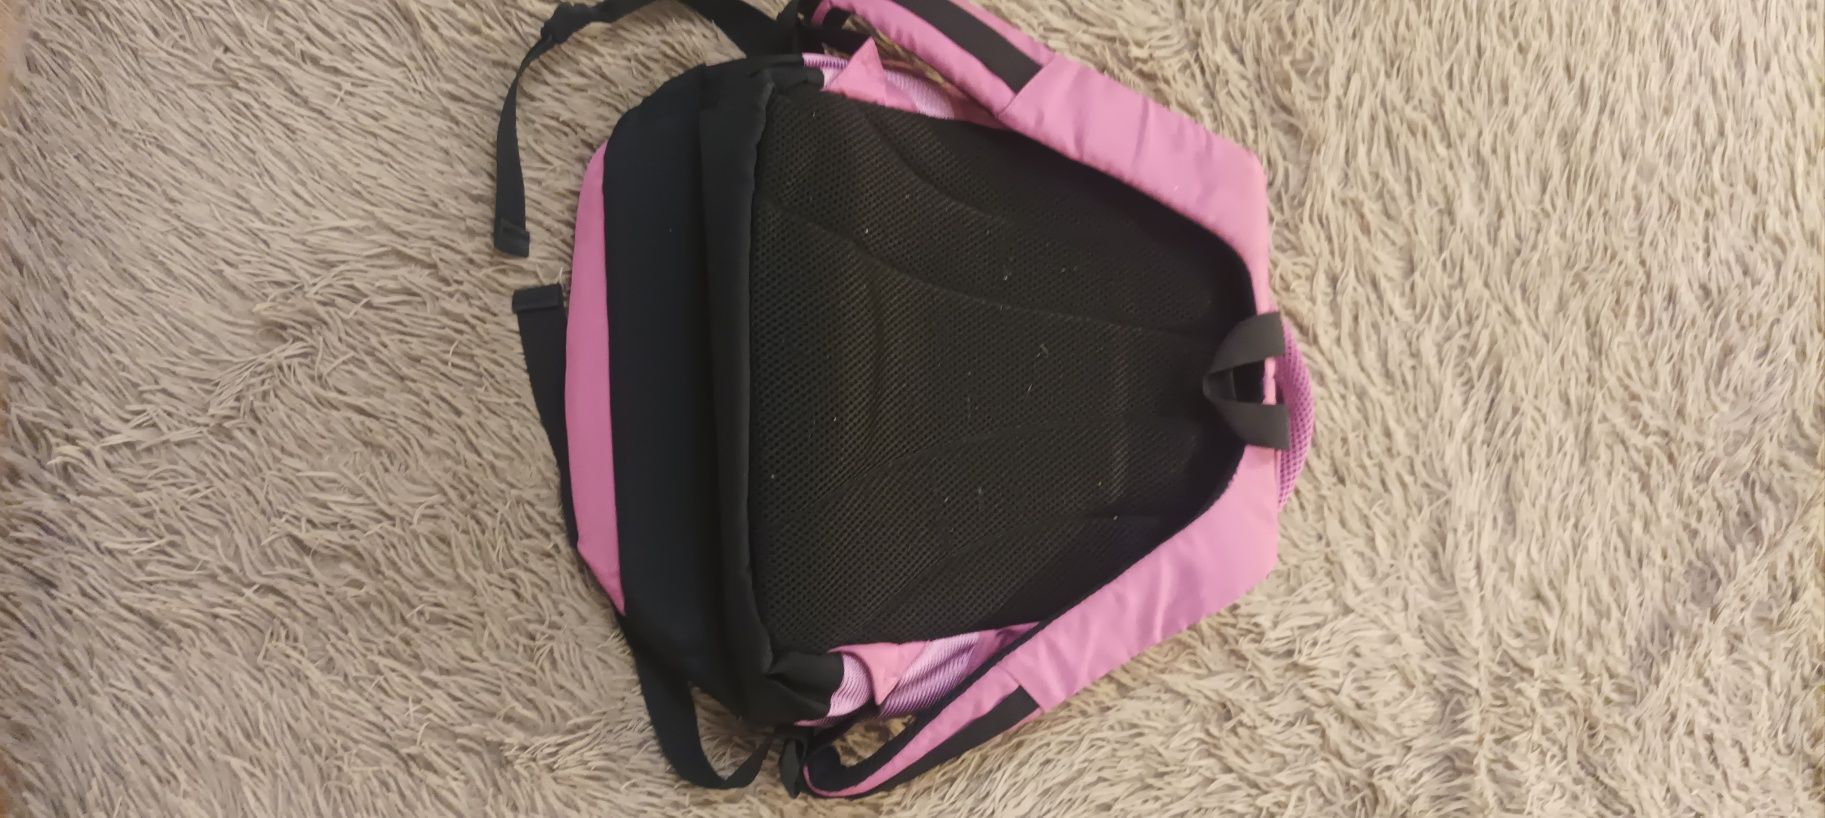 Рюкзак шкільний для дівчаток